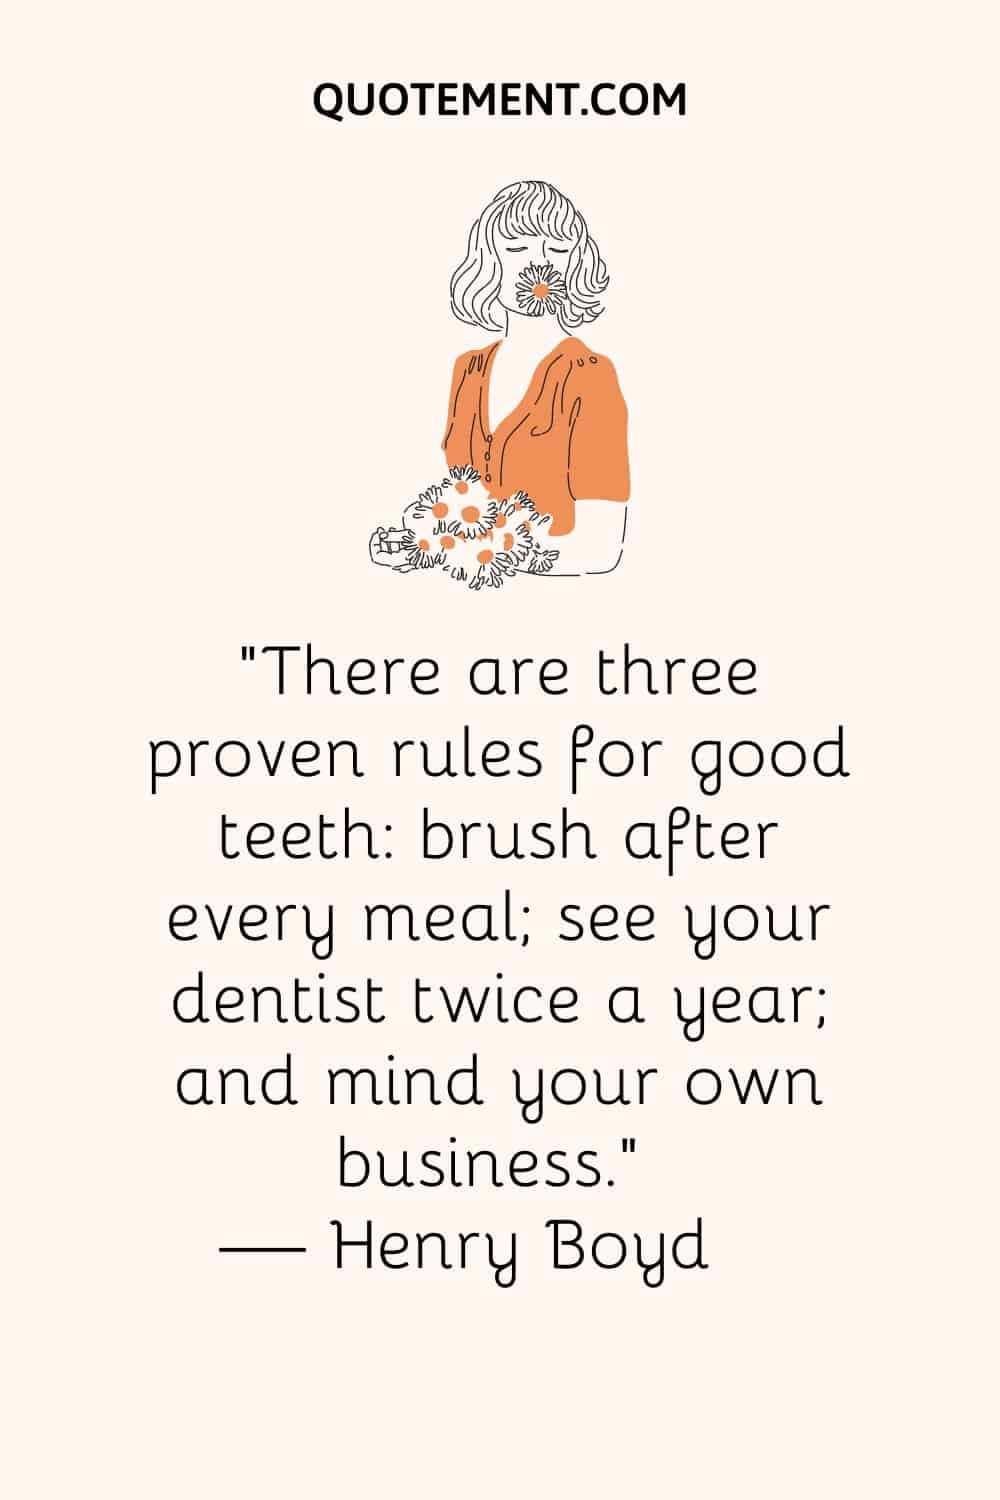 Hay tres reglas probadas para una buena dentadura